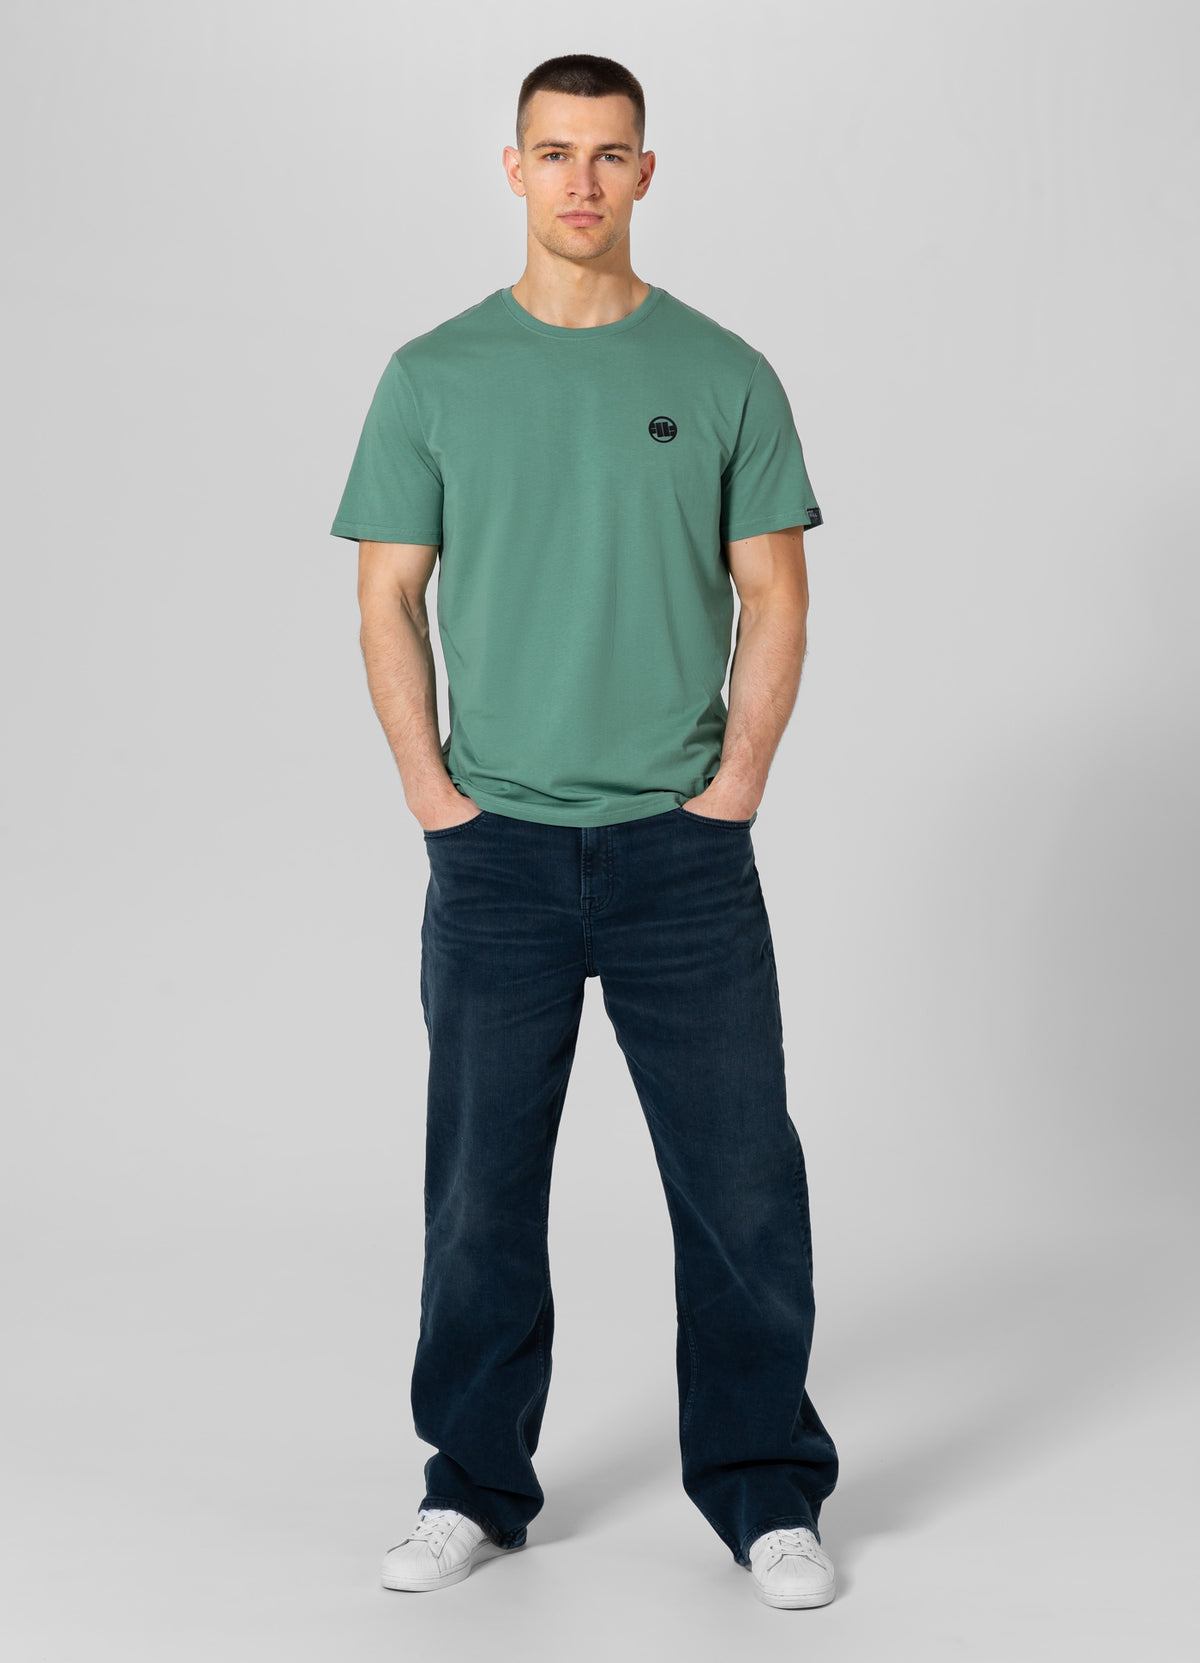 SMALL LOGO Lightweight Mint T-shirt